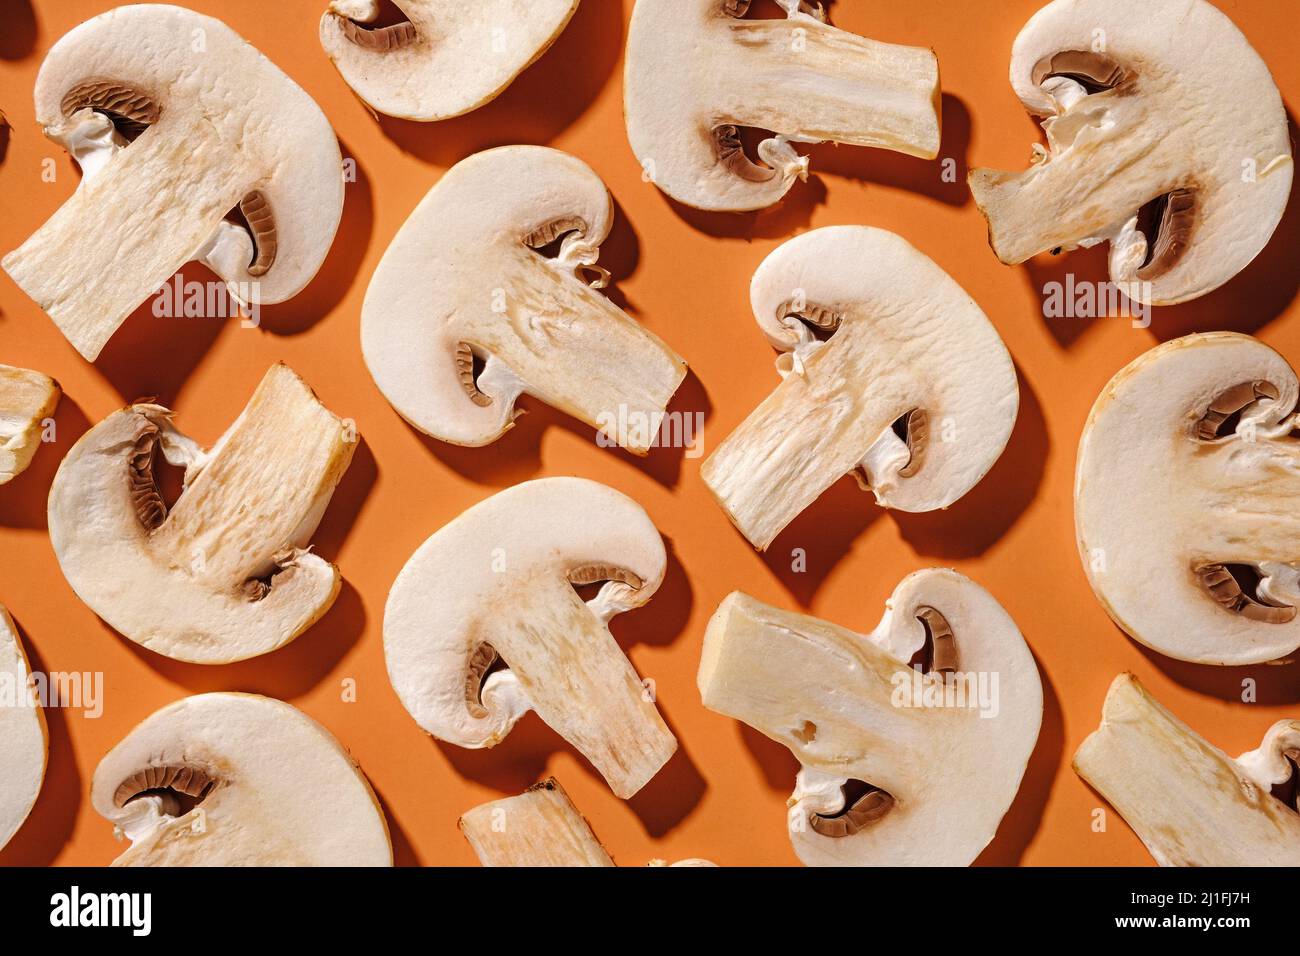 Plat déposer le fond de champignons frais tranchés sur l'orange disposés aléatoirement plein cadre Banque D'Images